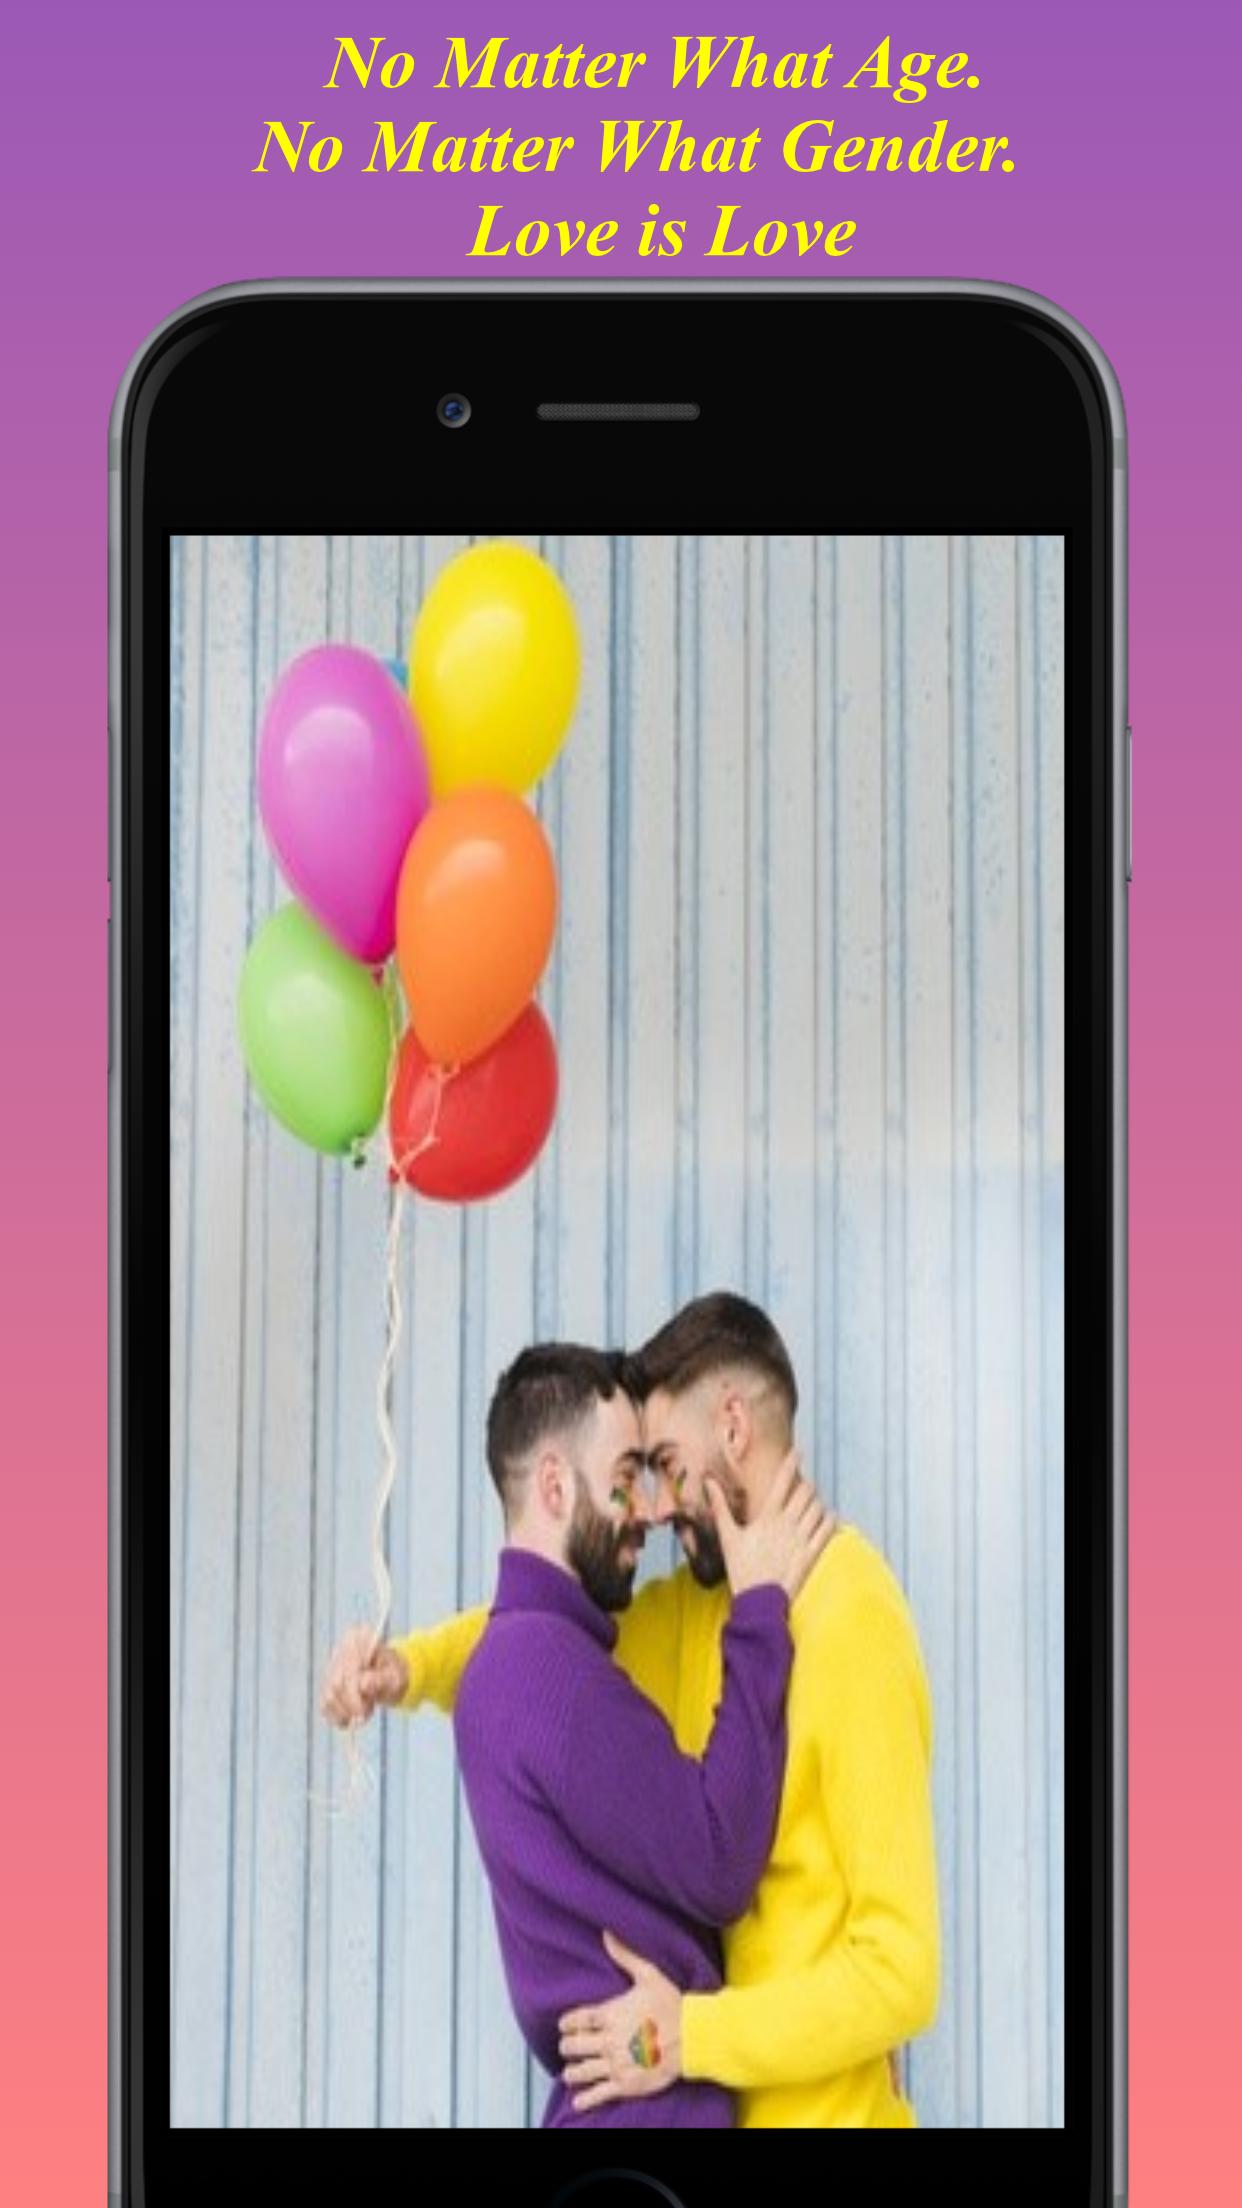 اینڈرائیڈ فونز کے لیے ہم جنس پرستوں کی ڈیٹنگ ایپ۔